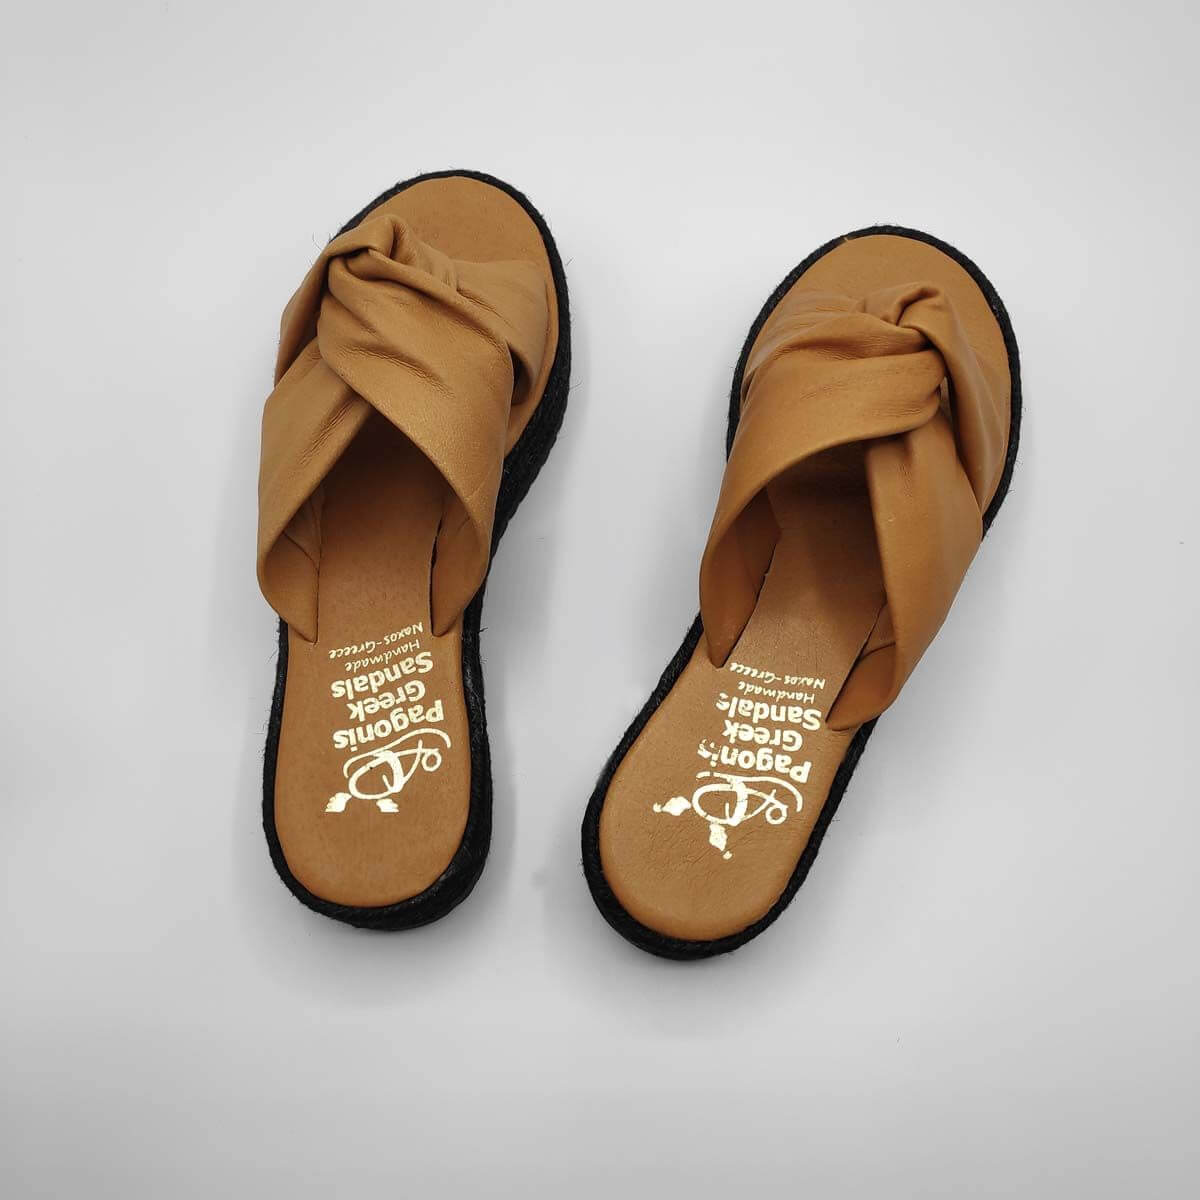 Bow slides platform soft leather sandals | Pagonis Greek Sandals